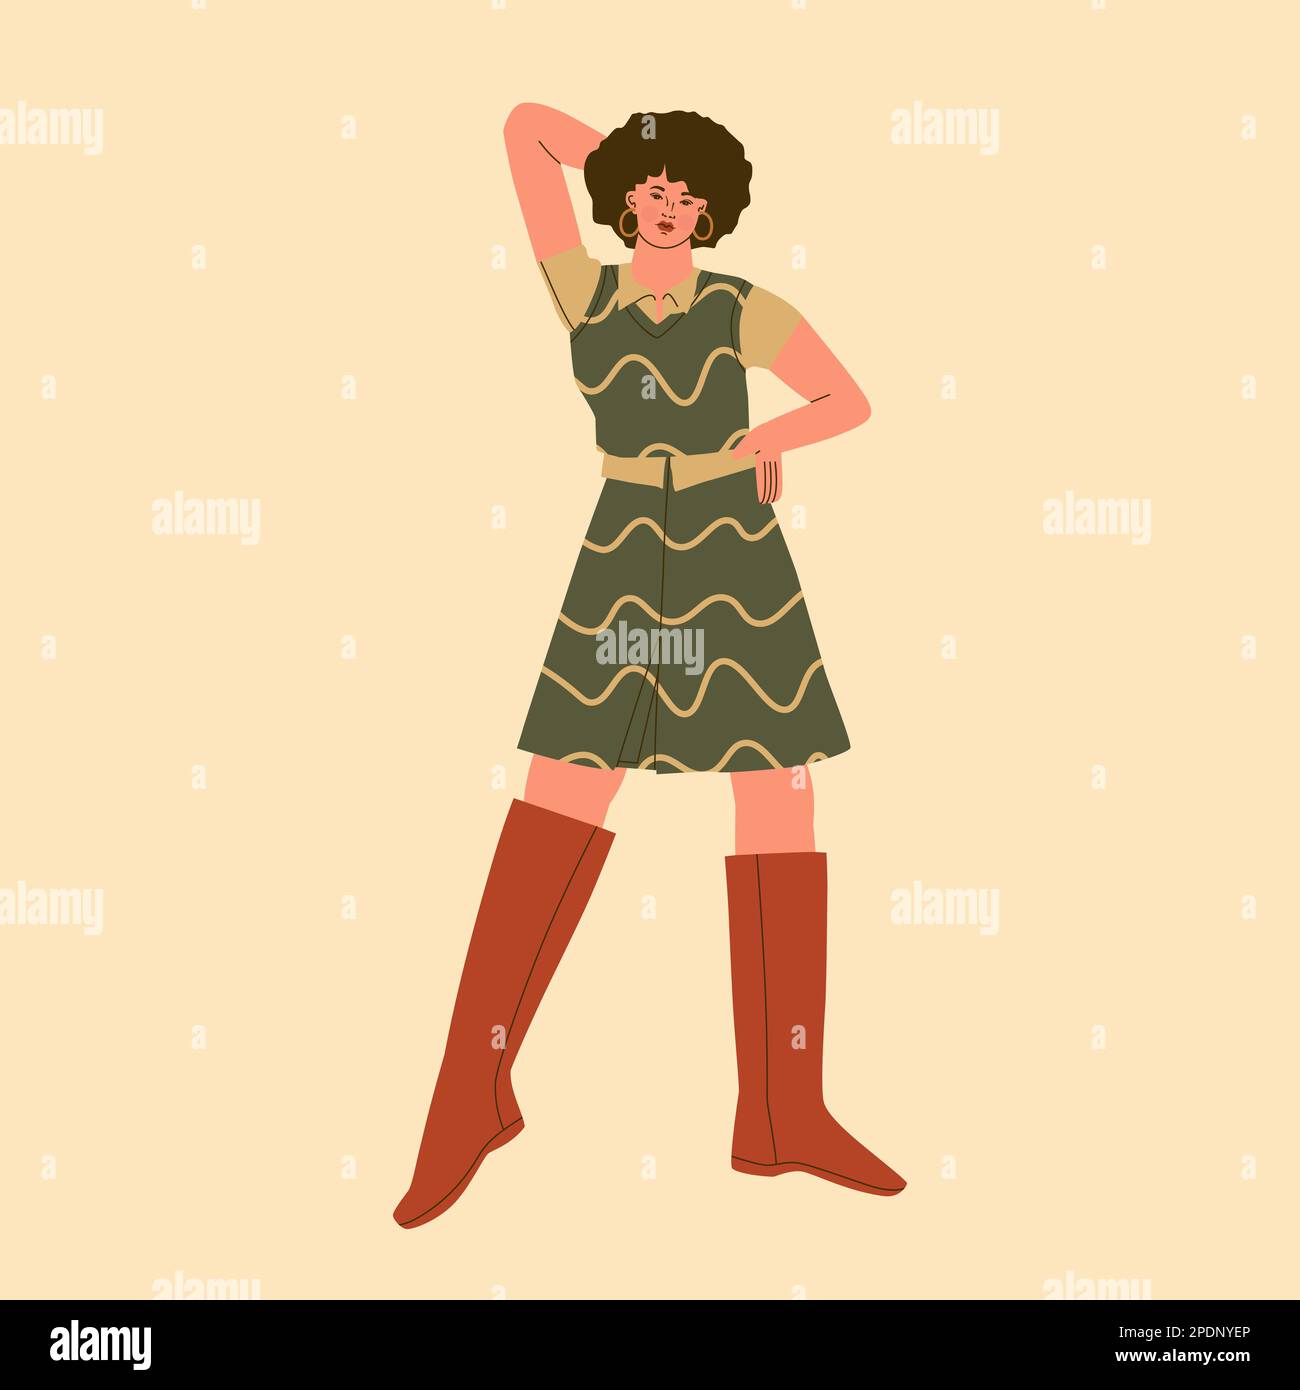 Mode und Stil der 70s Jahre. Süße junge Frau in einem kurzen Rock, einer Weste und hohen Stiefeln. Vektor-trendige Illustration. Stock Vektor